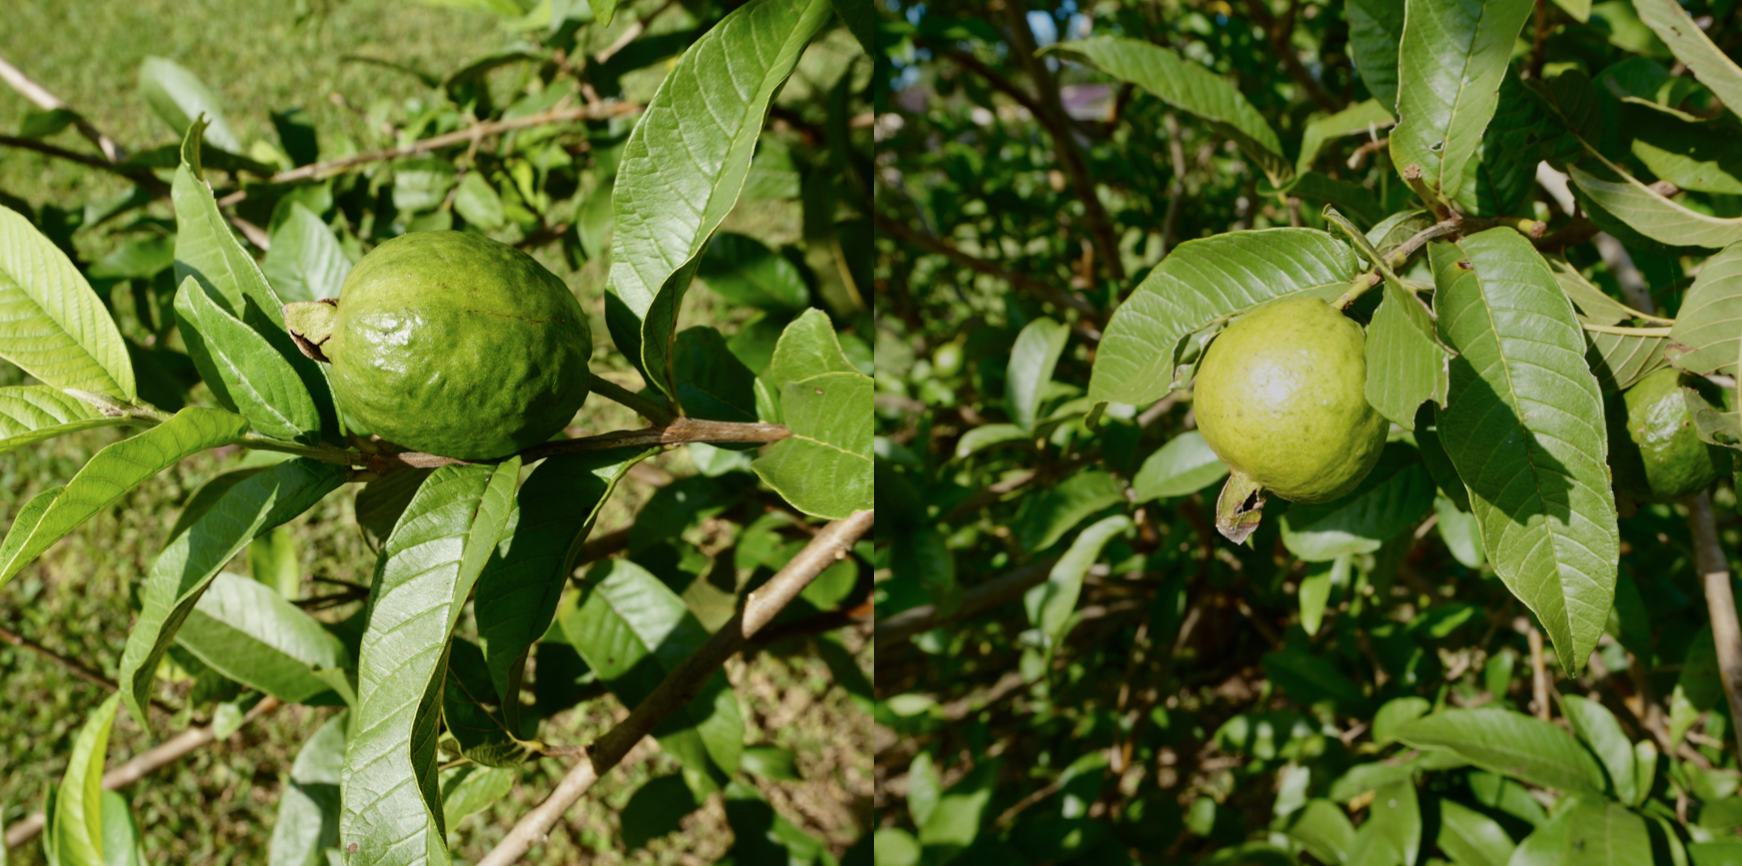 A underripe guava and a ripe guava.